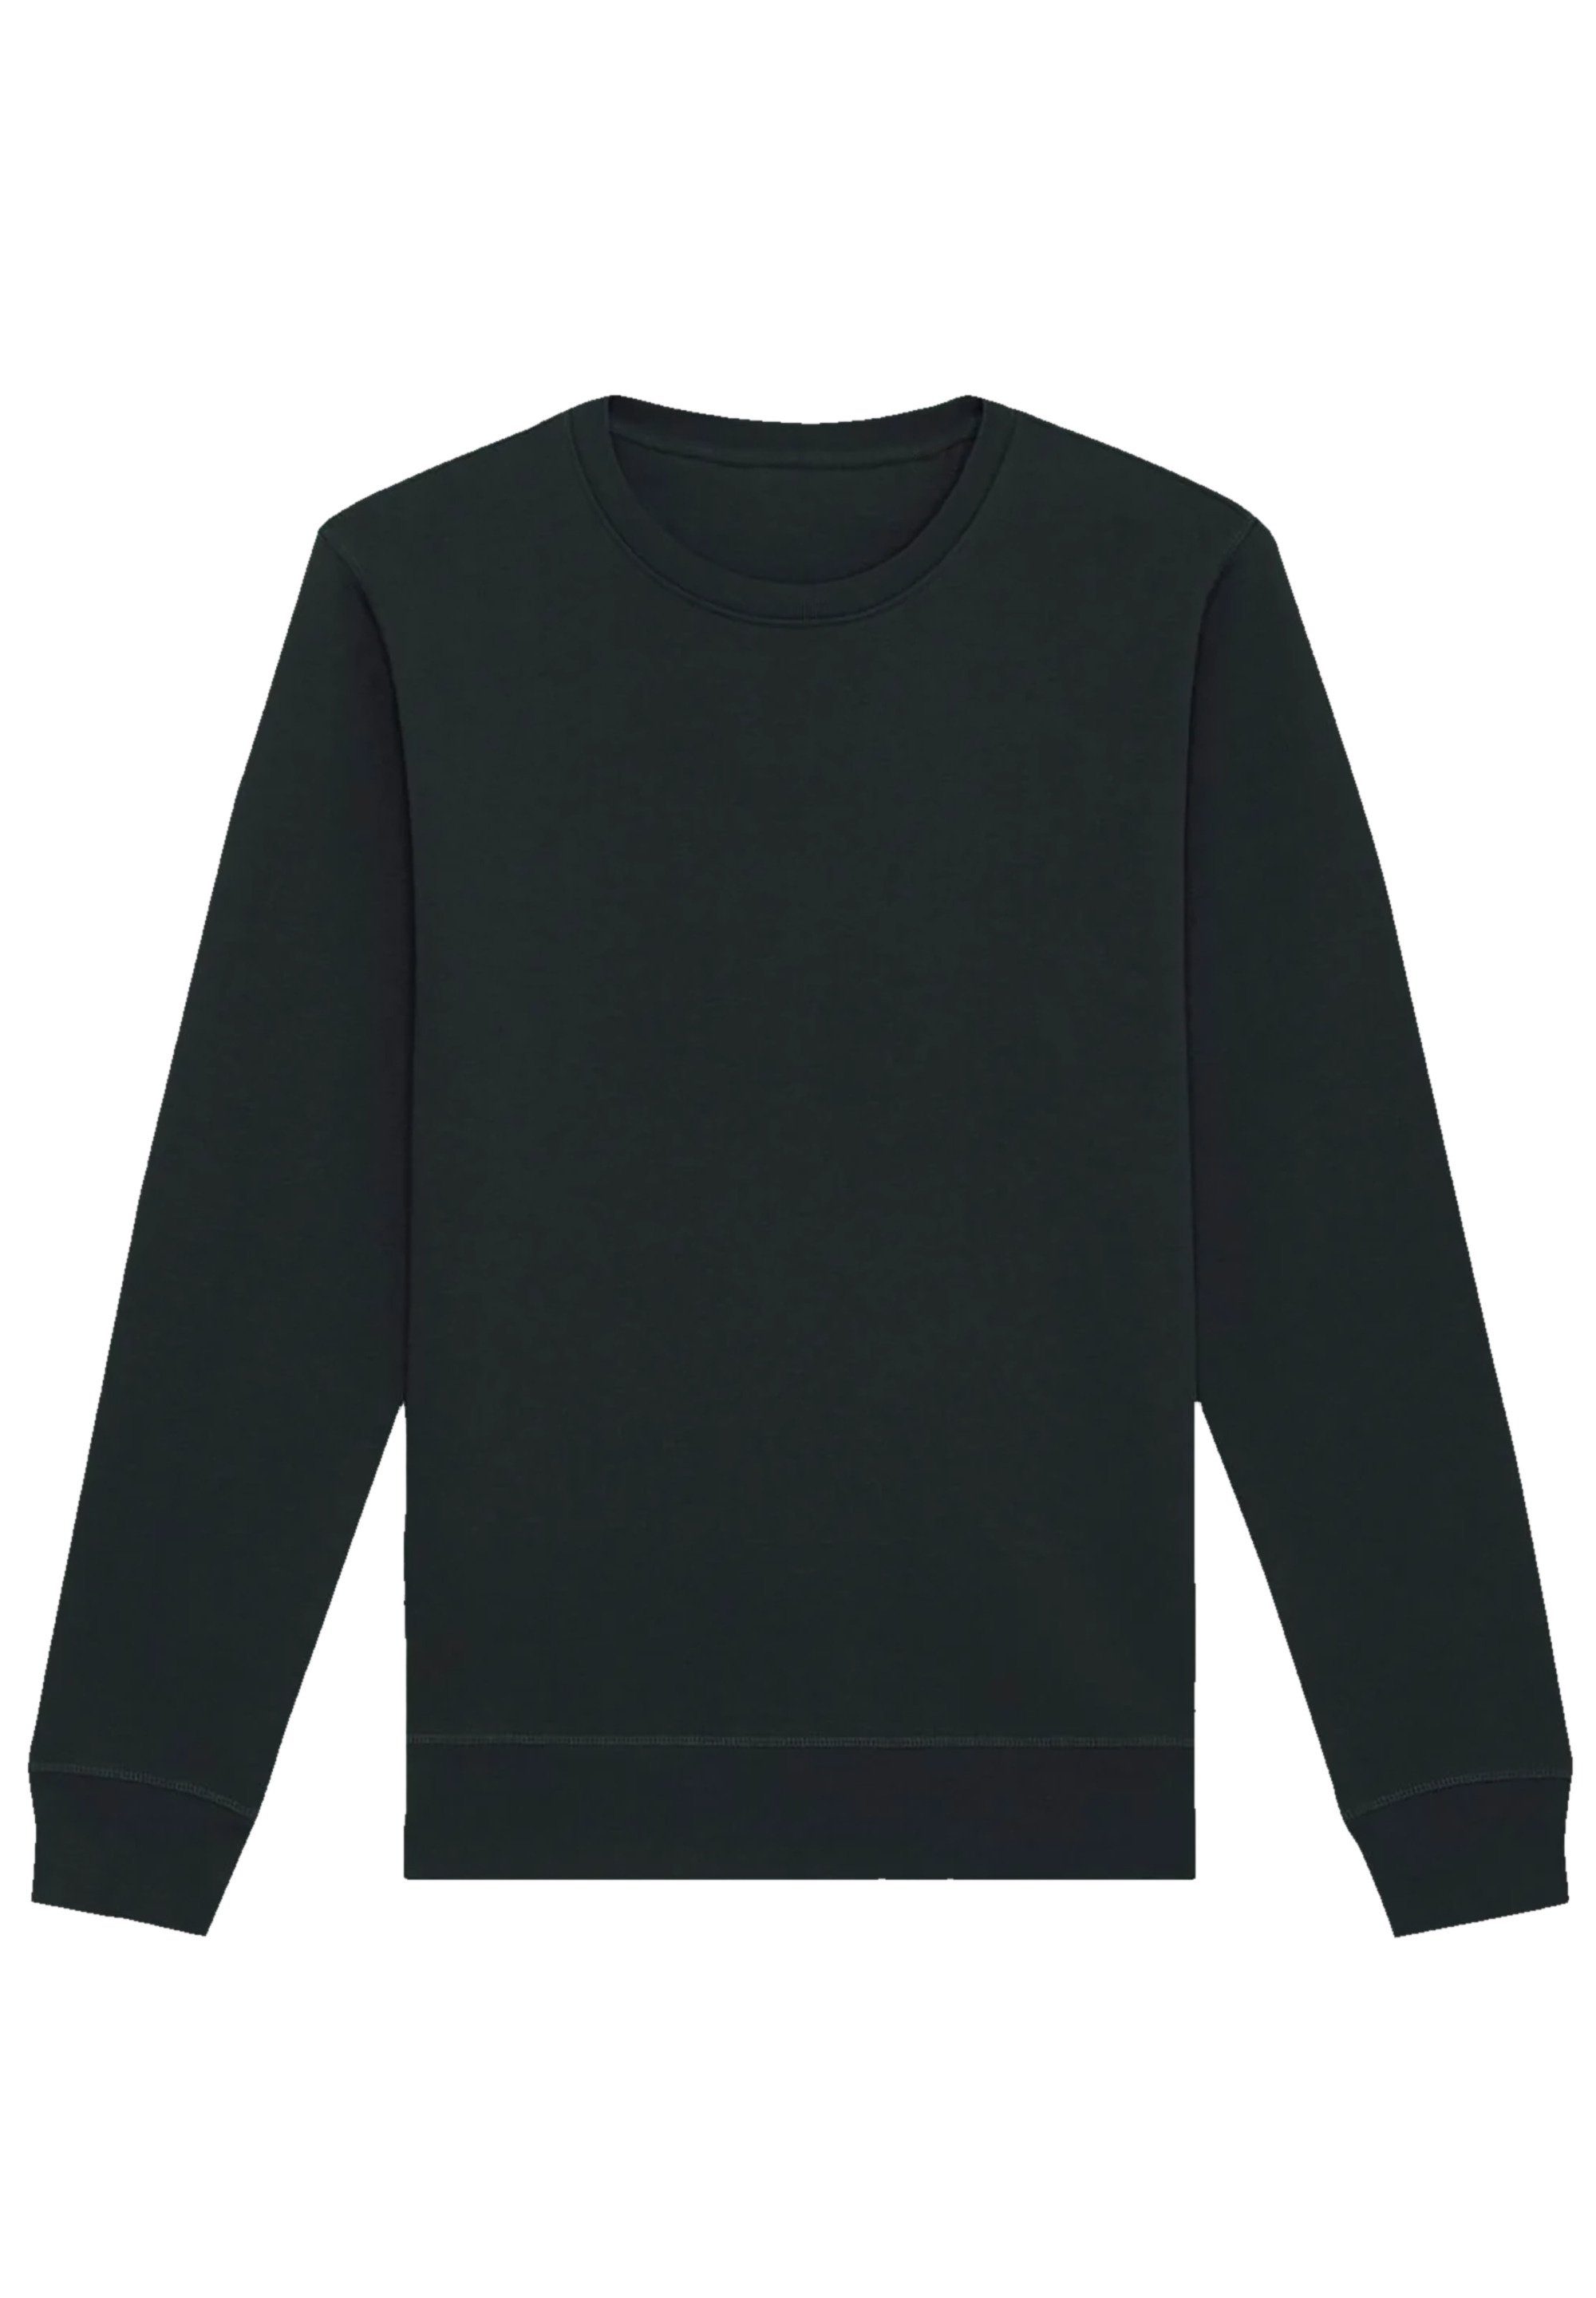 F4NT4STIC Sweatshirt Tupac Shakur Praying Print | Sweatshirts